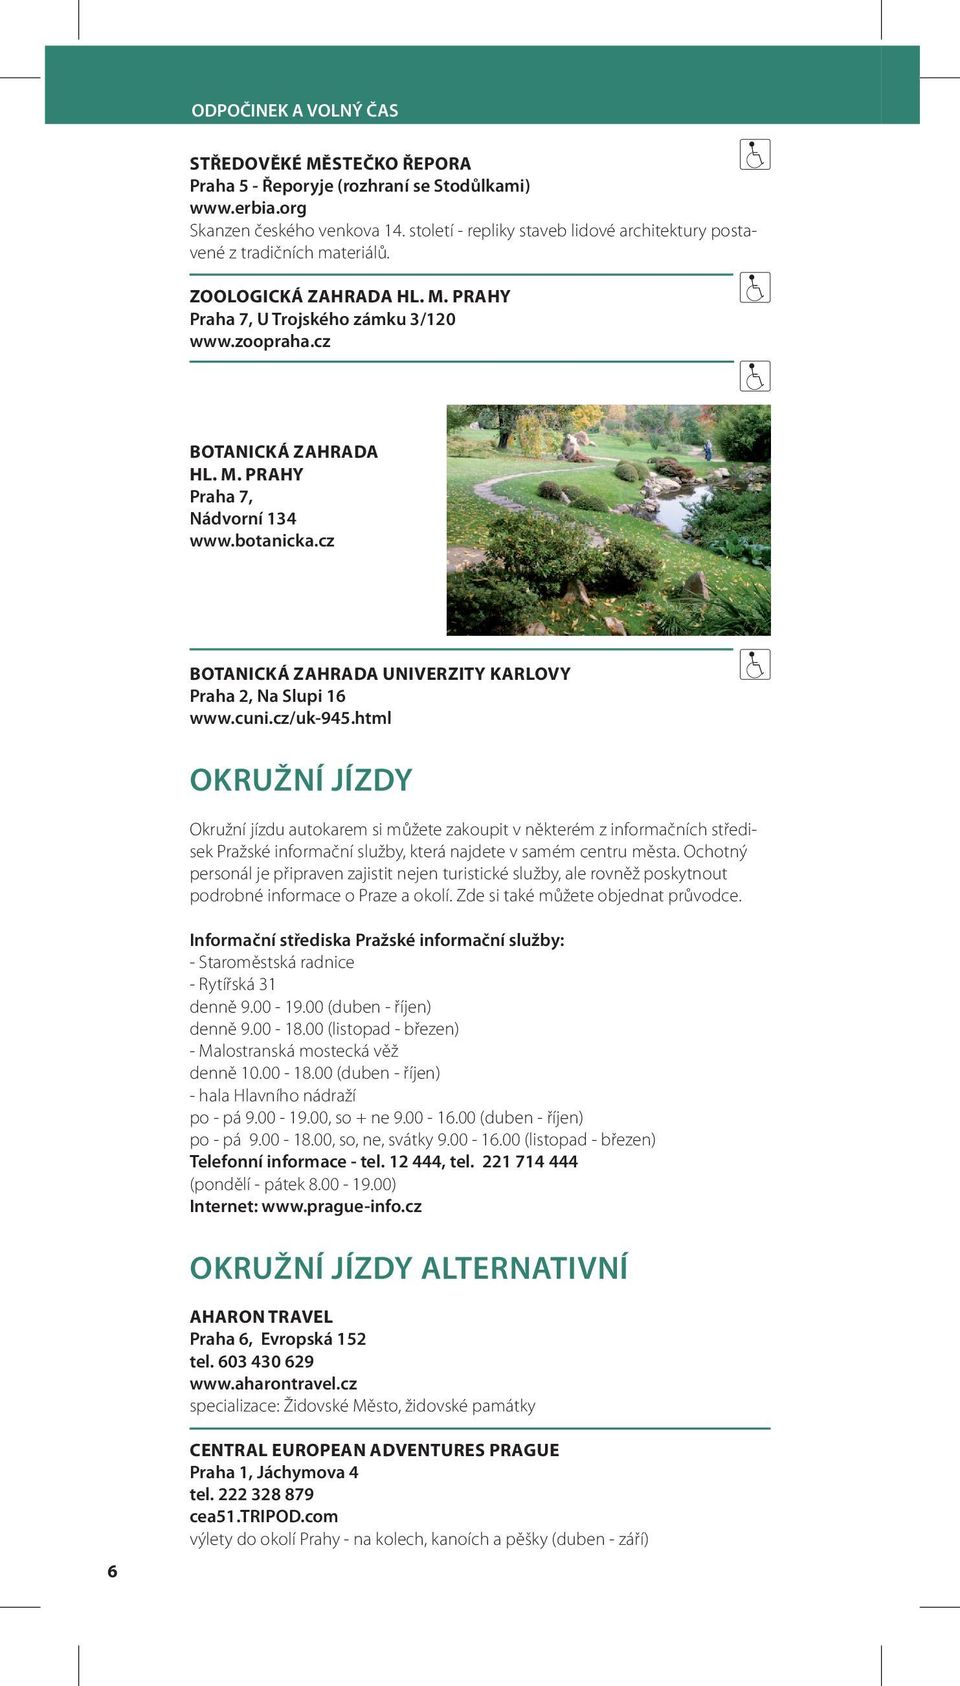 botanicka.cz BOTANICKÁ ZAHRADA UNIVERZITY KARLOVY Praha 2, Na Slupi 16 www.cuni.cz/uk-945.